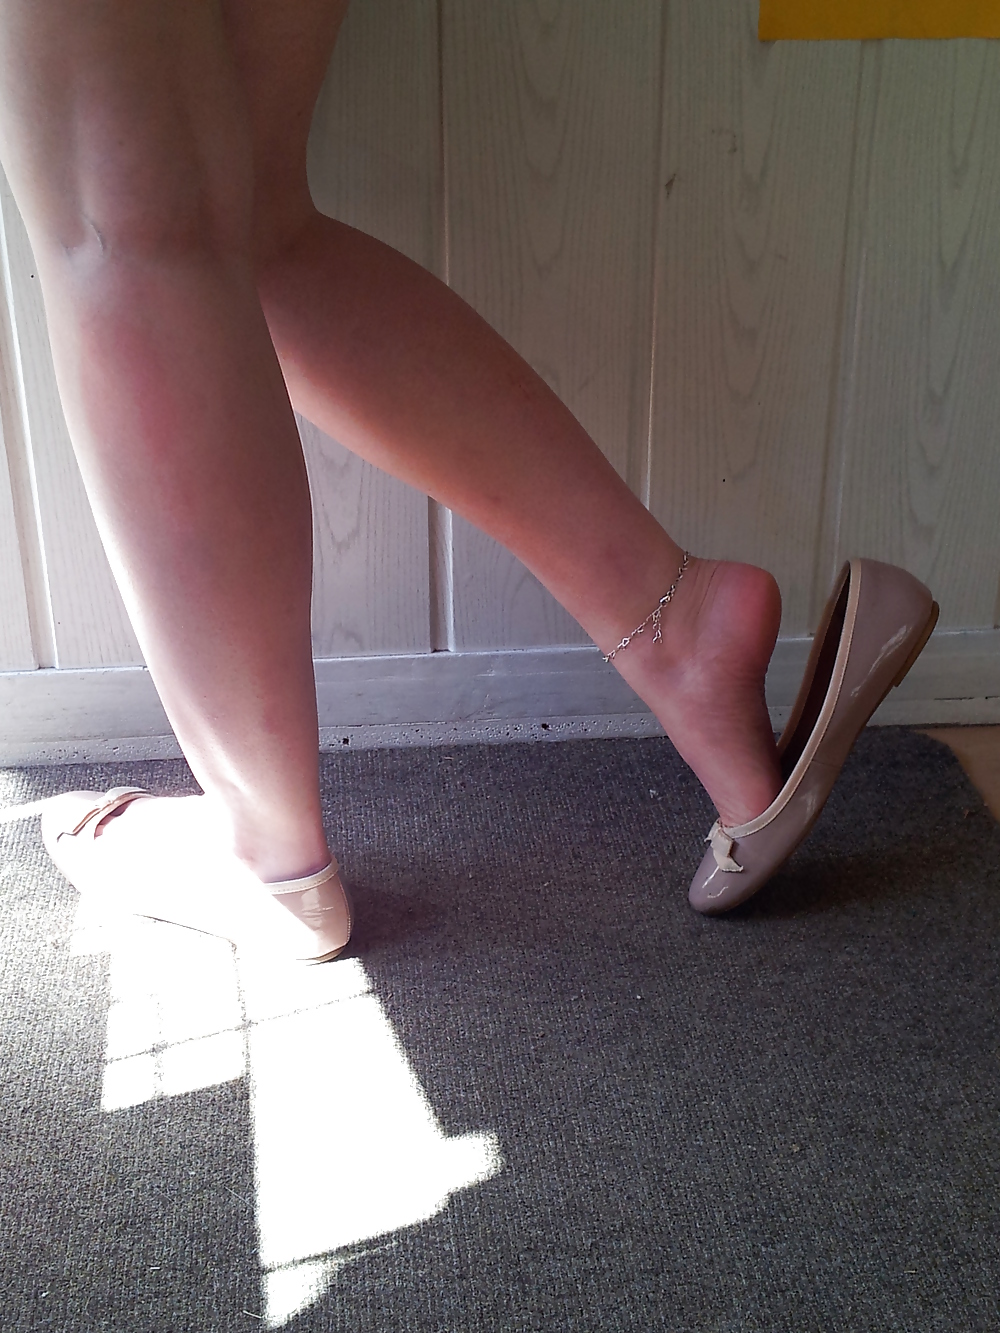 Wifes bien desgastado desnudo falta bailarinas flats shoes3
 #19059054